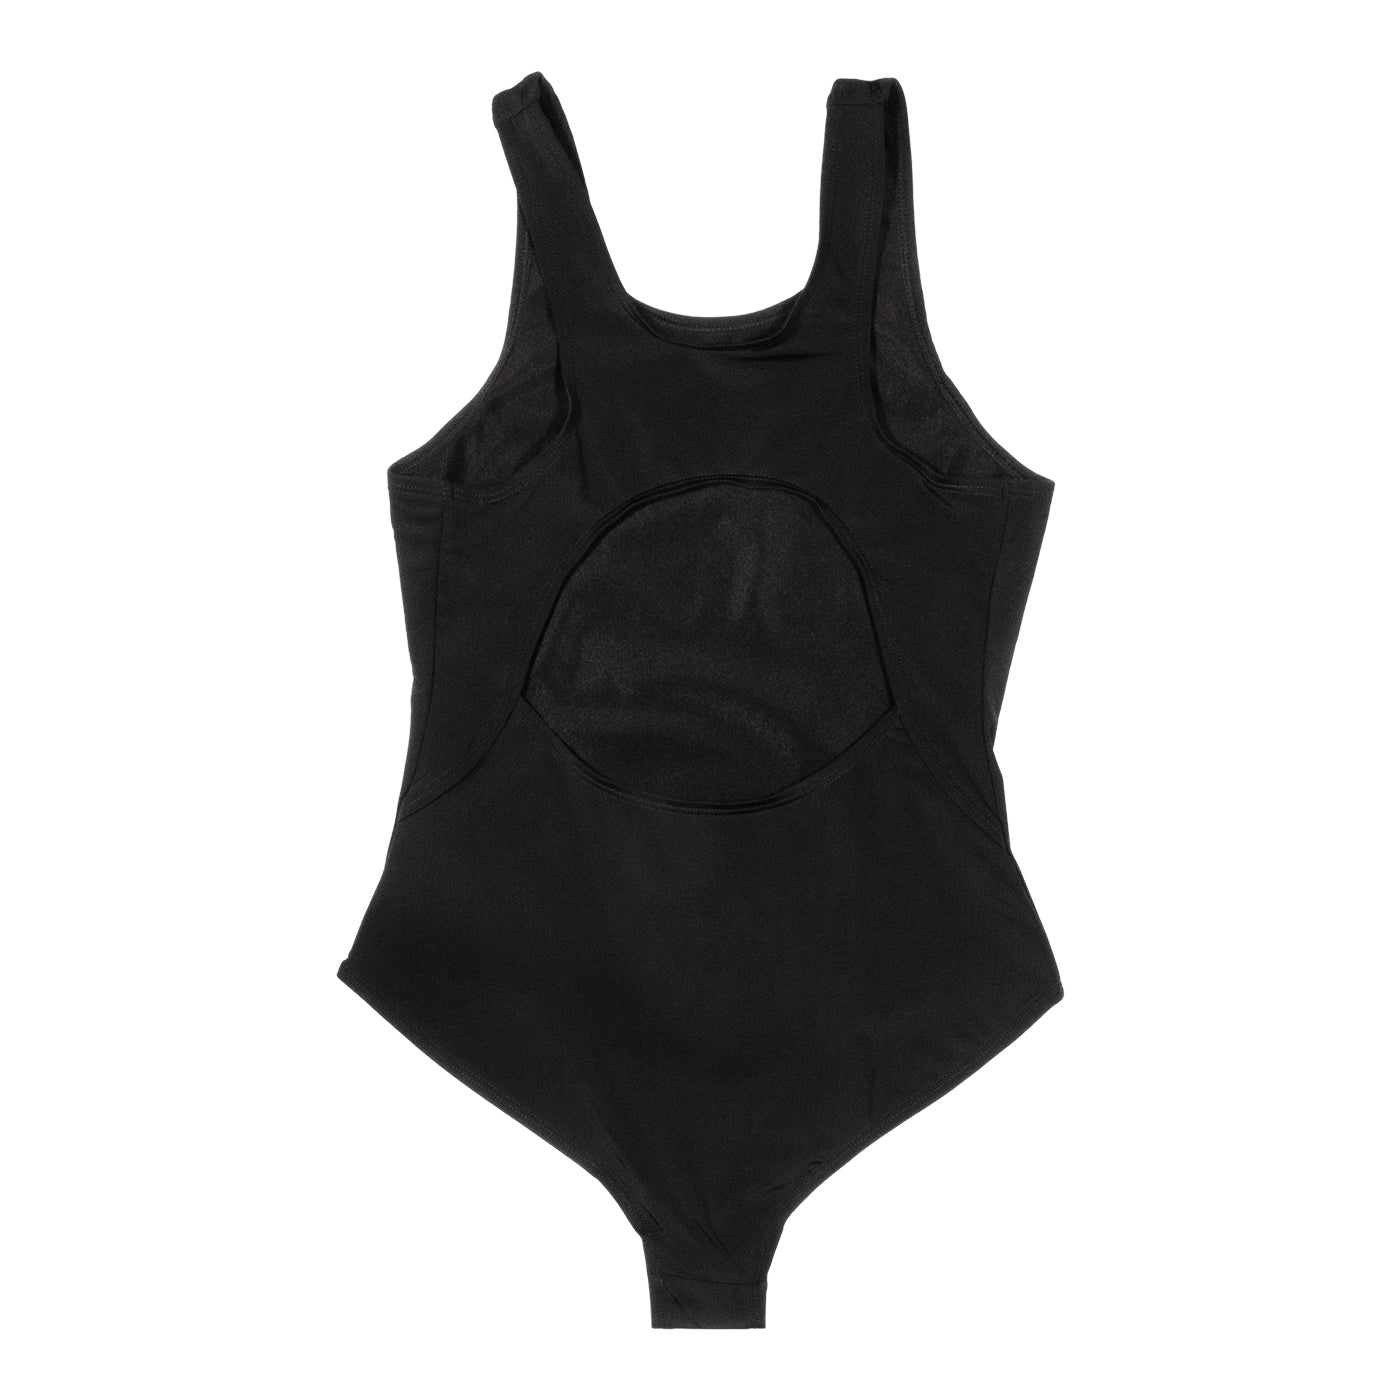 Girls Performance Racer Back Swimsuit – Black